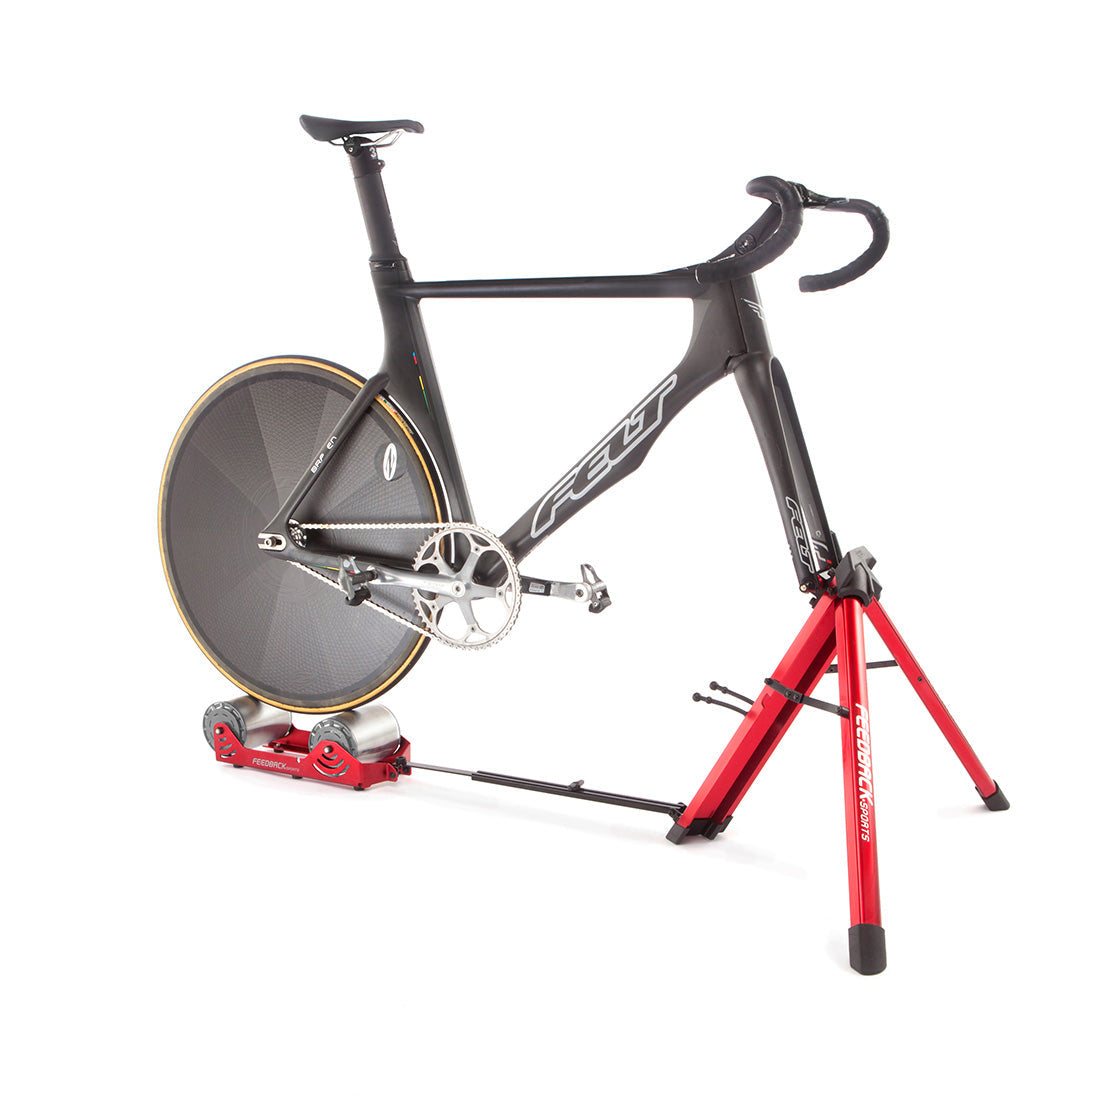 Track bike mounted on Omnium bike trainer in studio.